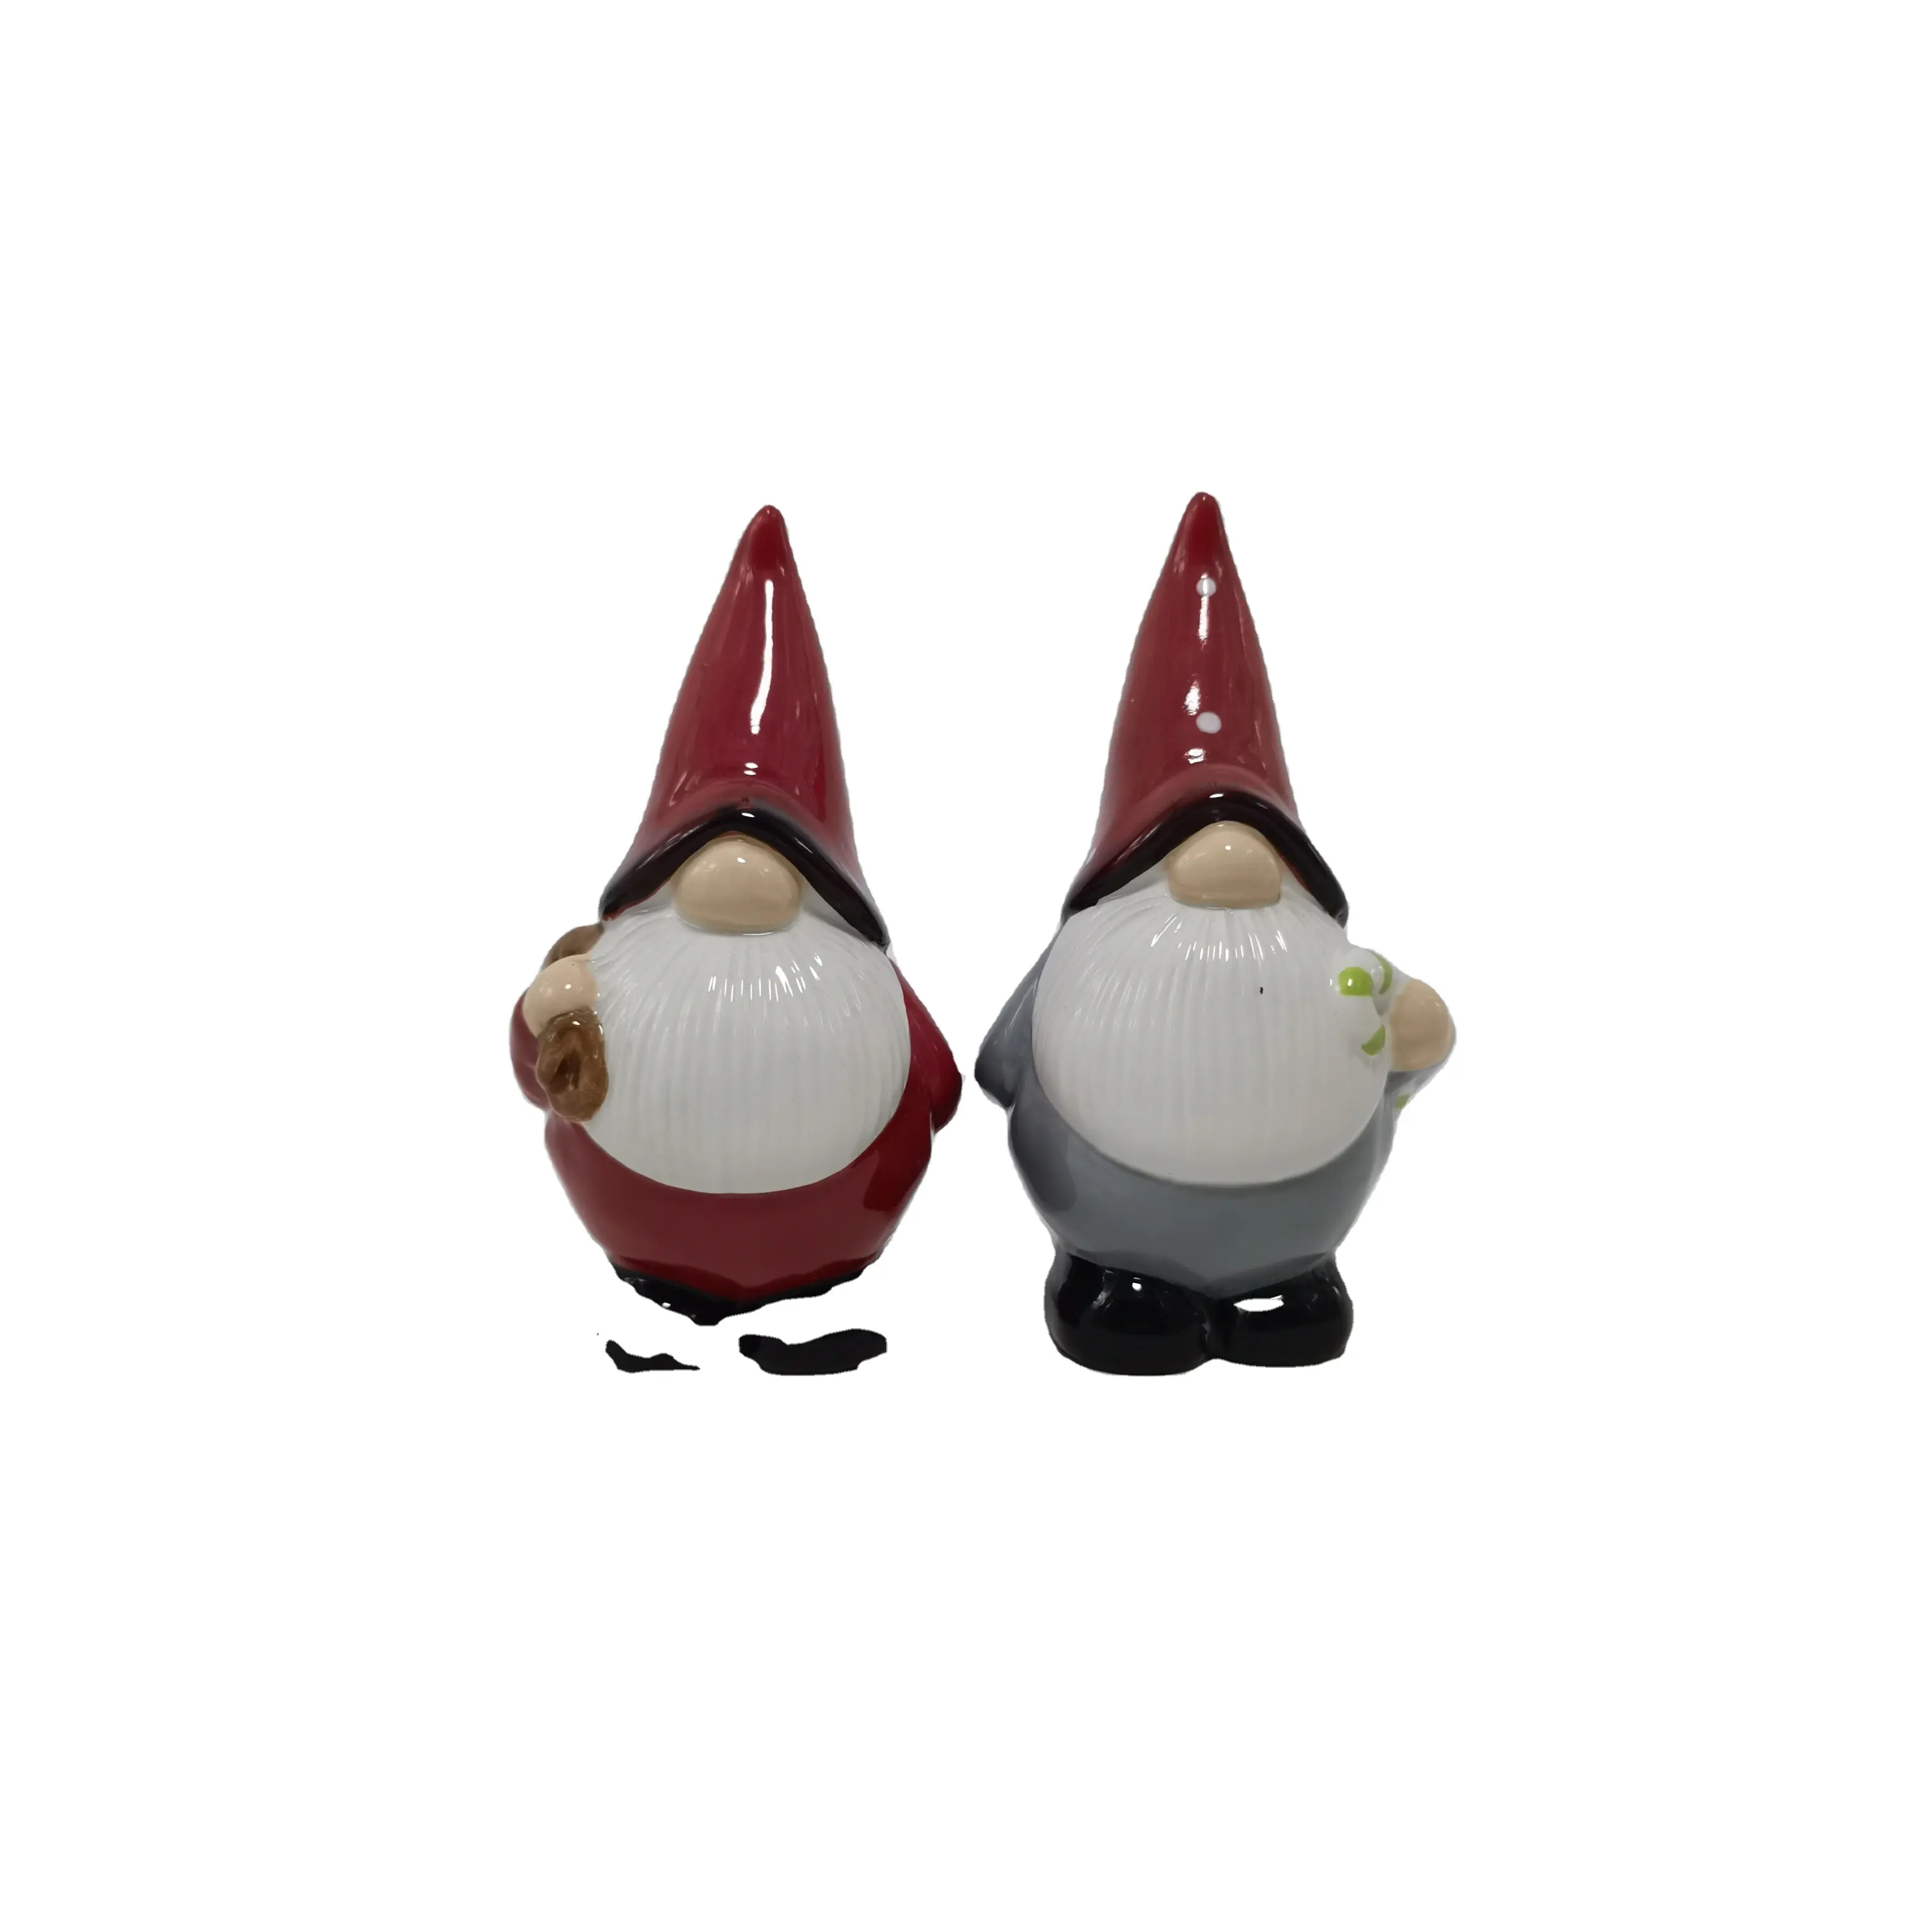 Factory new model Christmas figurine Handmade ceramic Christmas gnome Home living room tabletop decoration Santa Claus